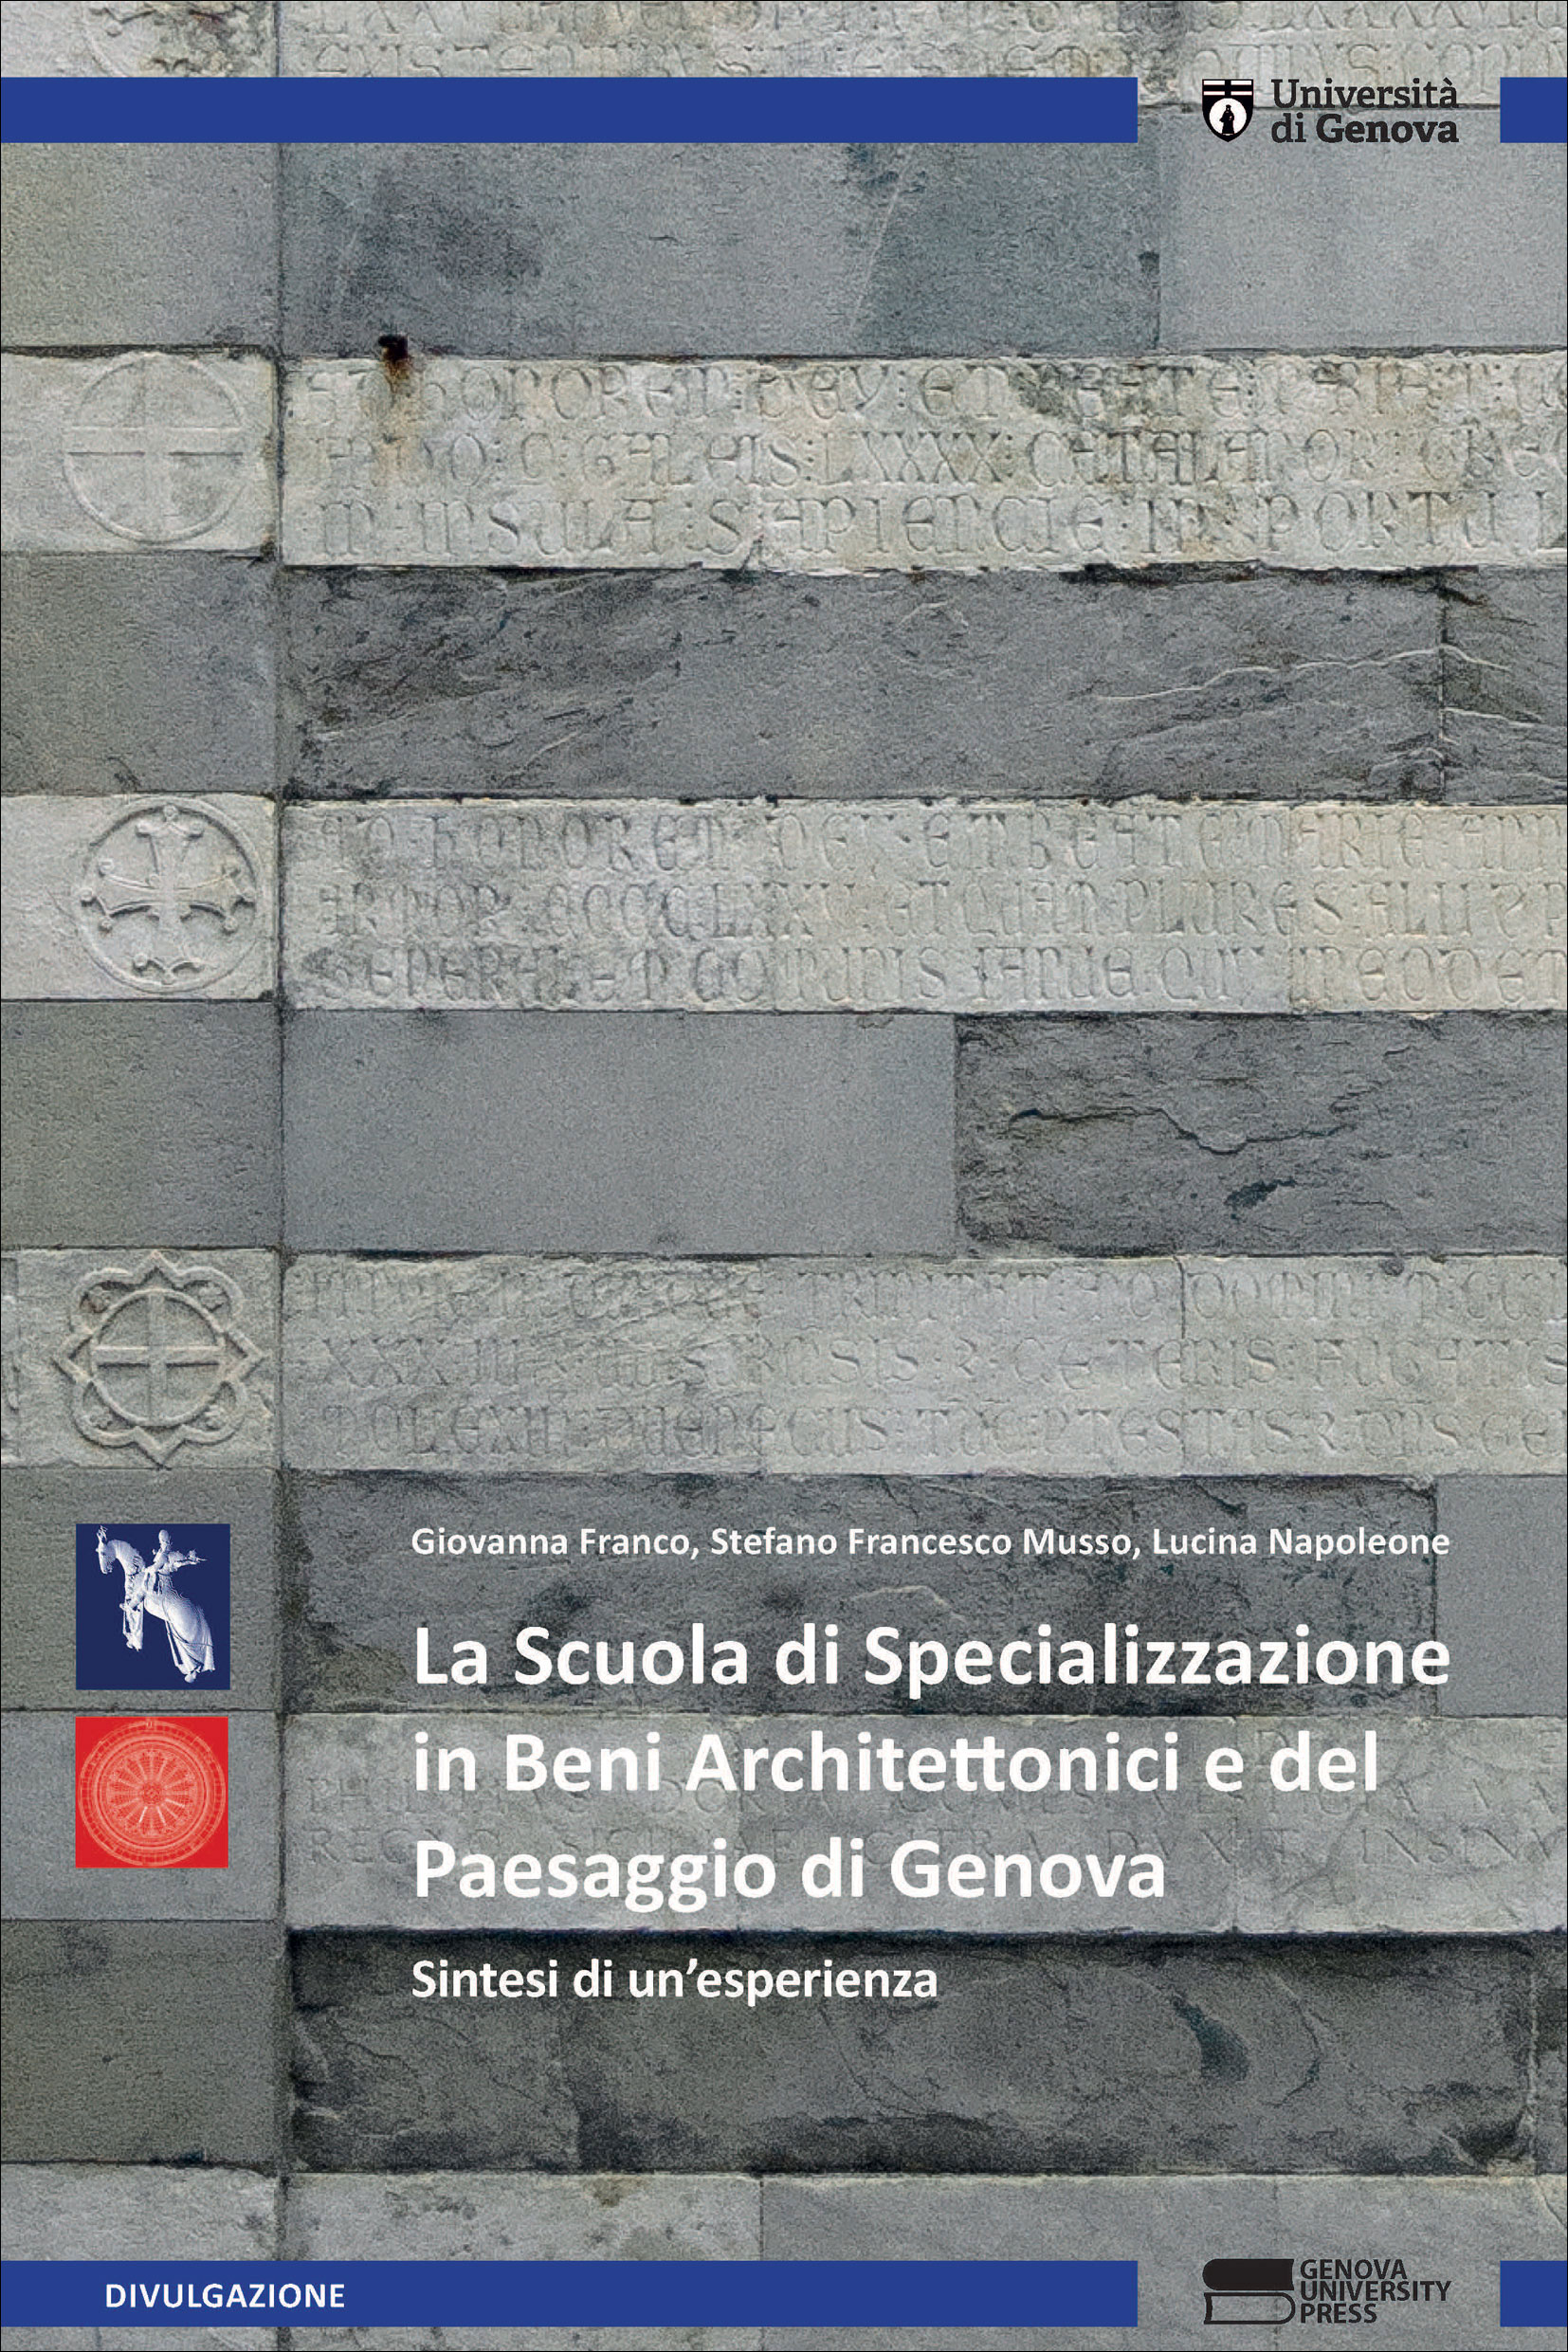 La Scuola di Specializzazione in Beni Architettonici e del Paesaggio di Genova